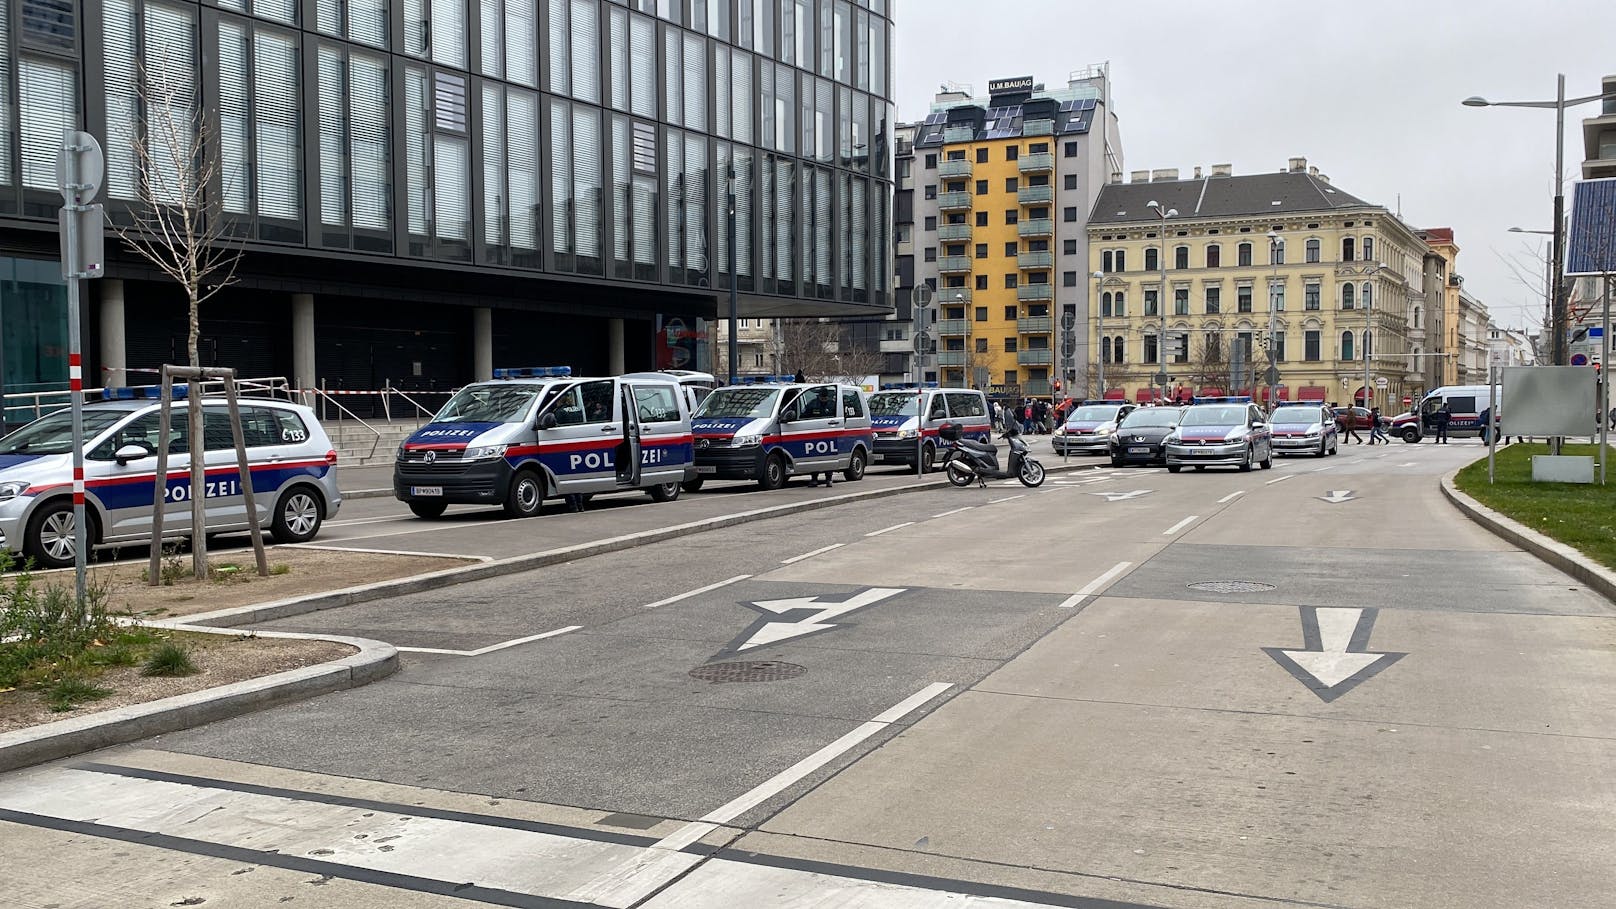 In Wien finden am Samstag gleich mehrere Demonstrationen gegen die Corona-Maßnahmen statt. Die Polizei ist gerüstet.